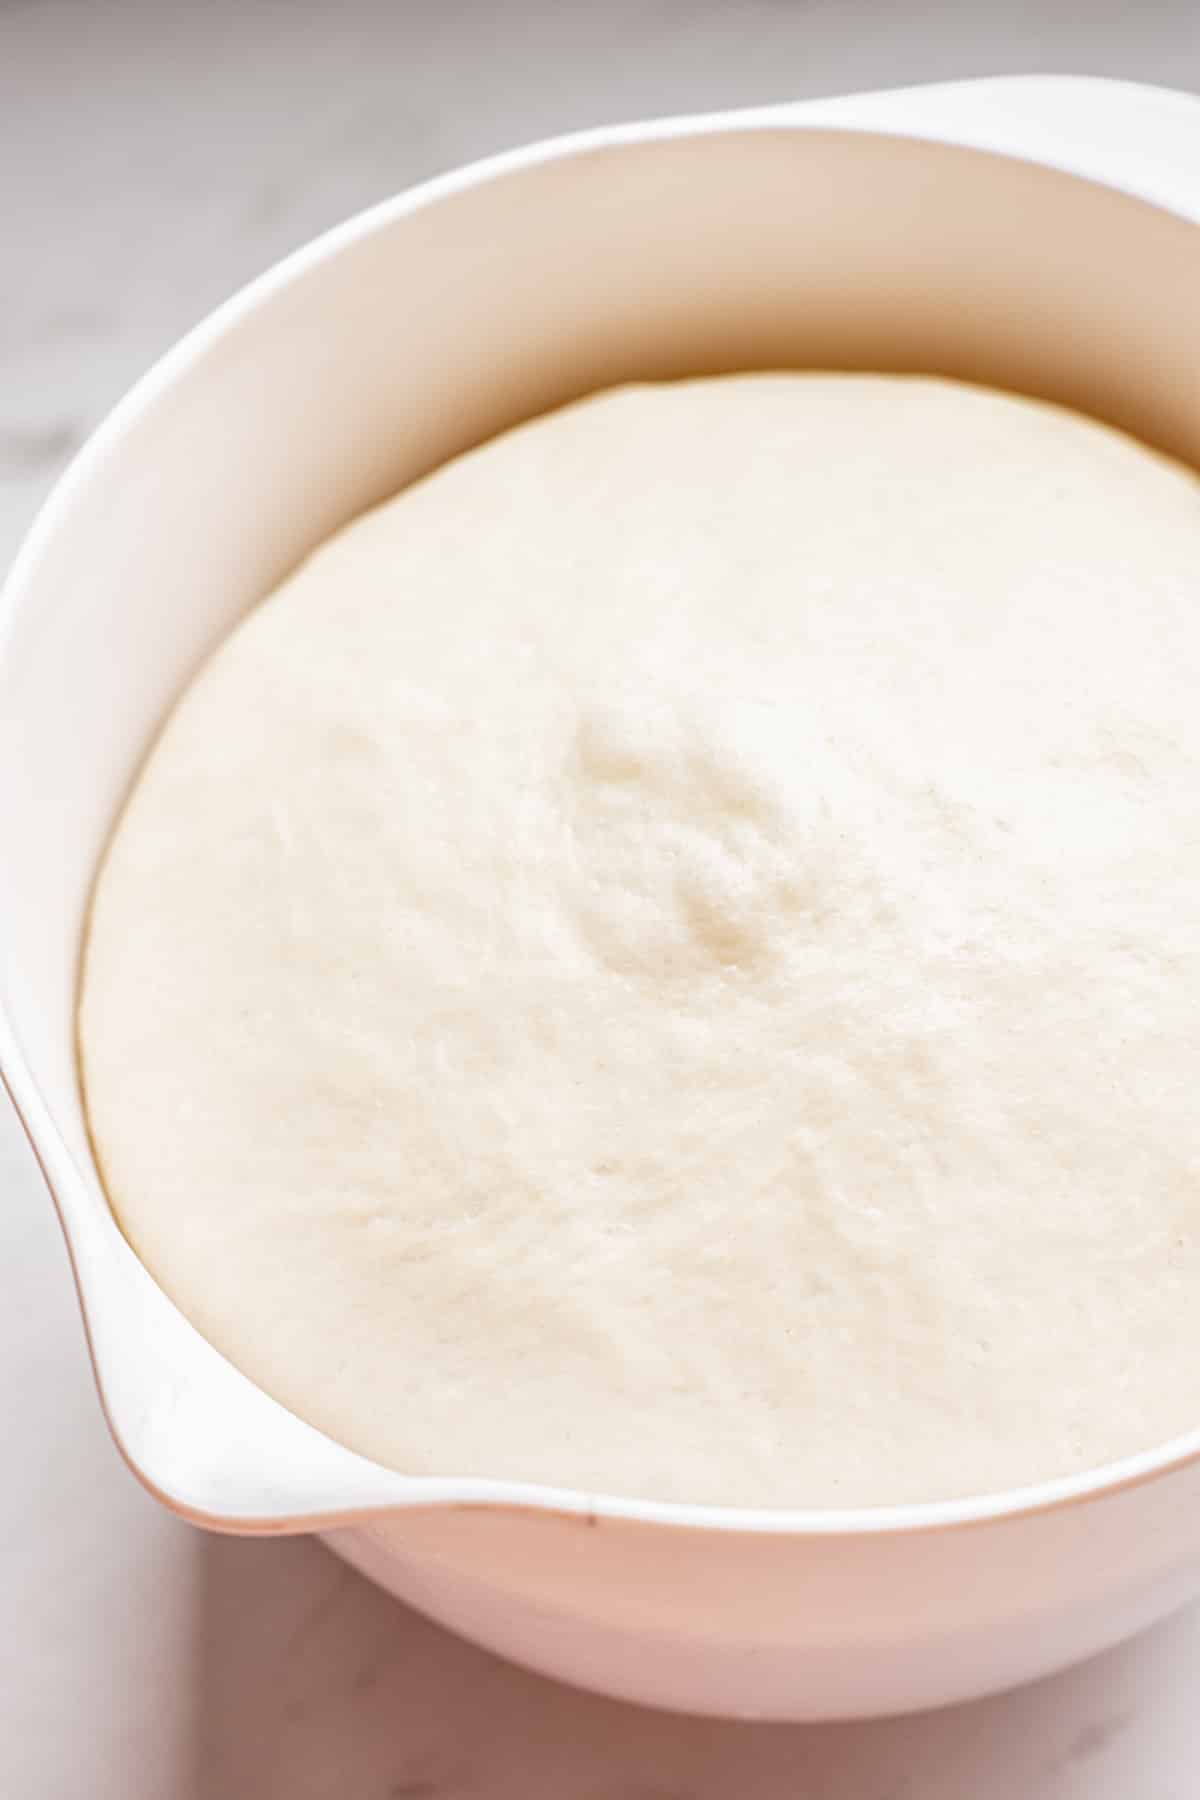 a bowl of risen dough.